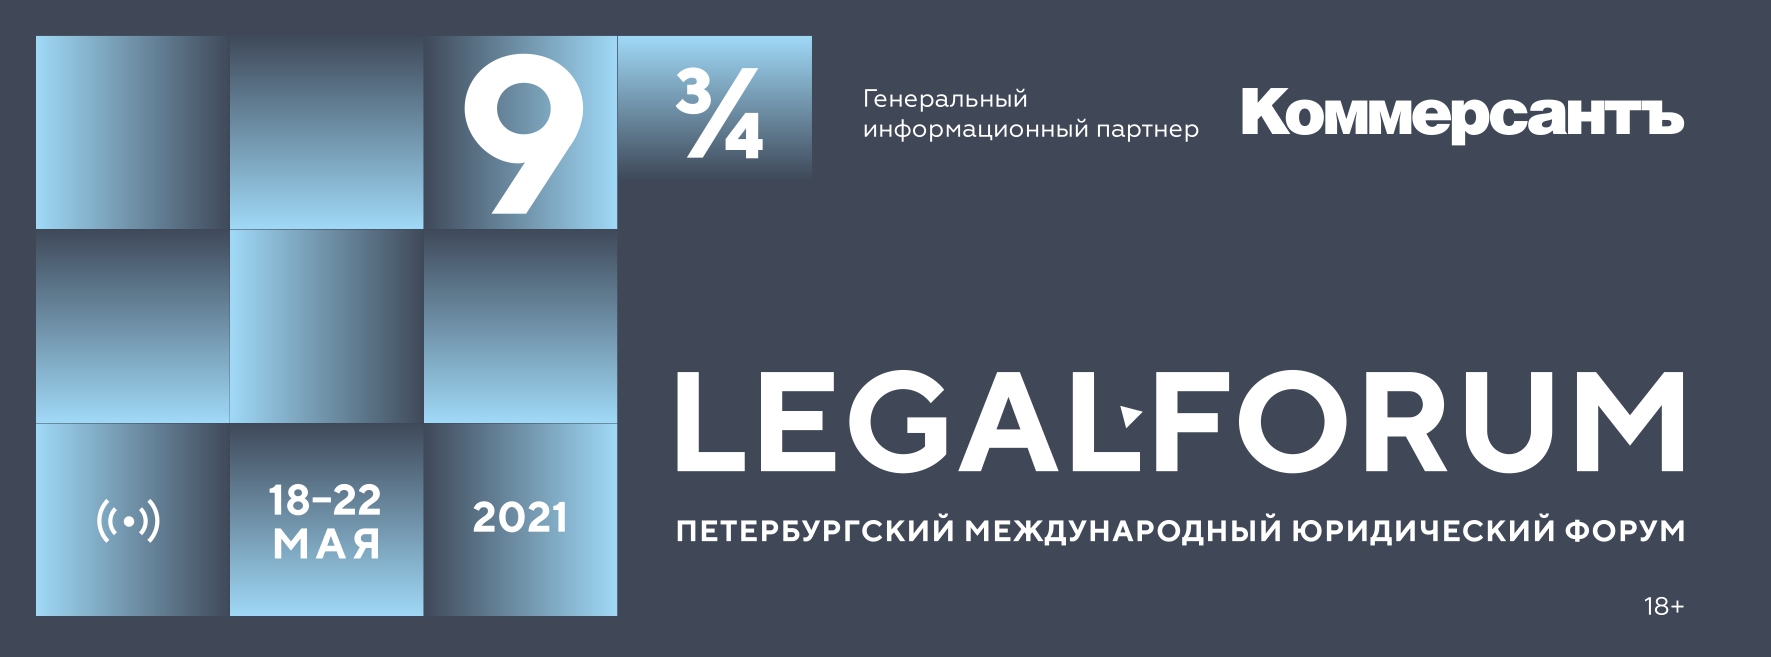 Петербургский международный юридический форум 2021